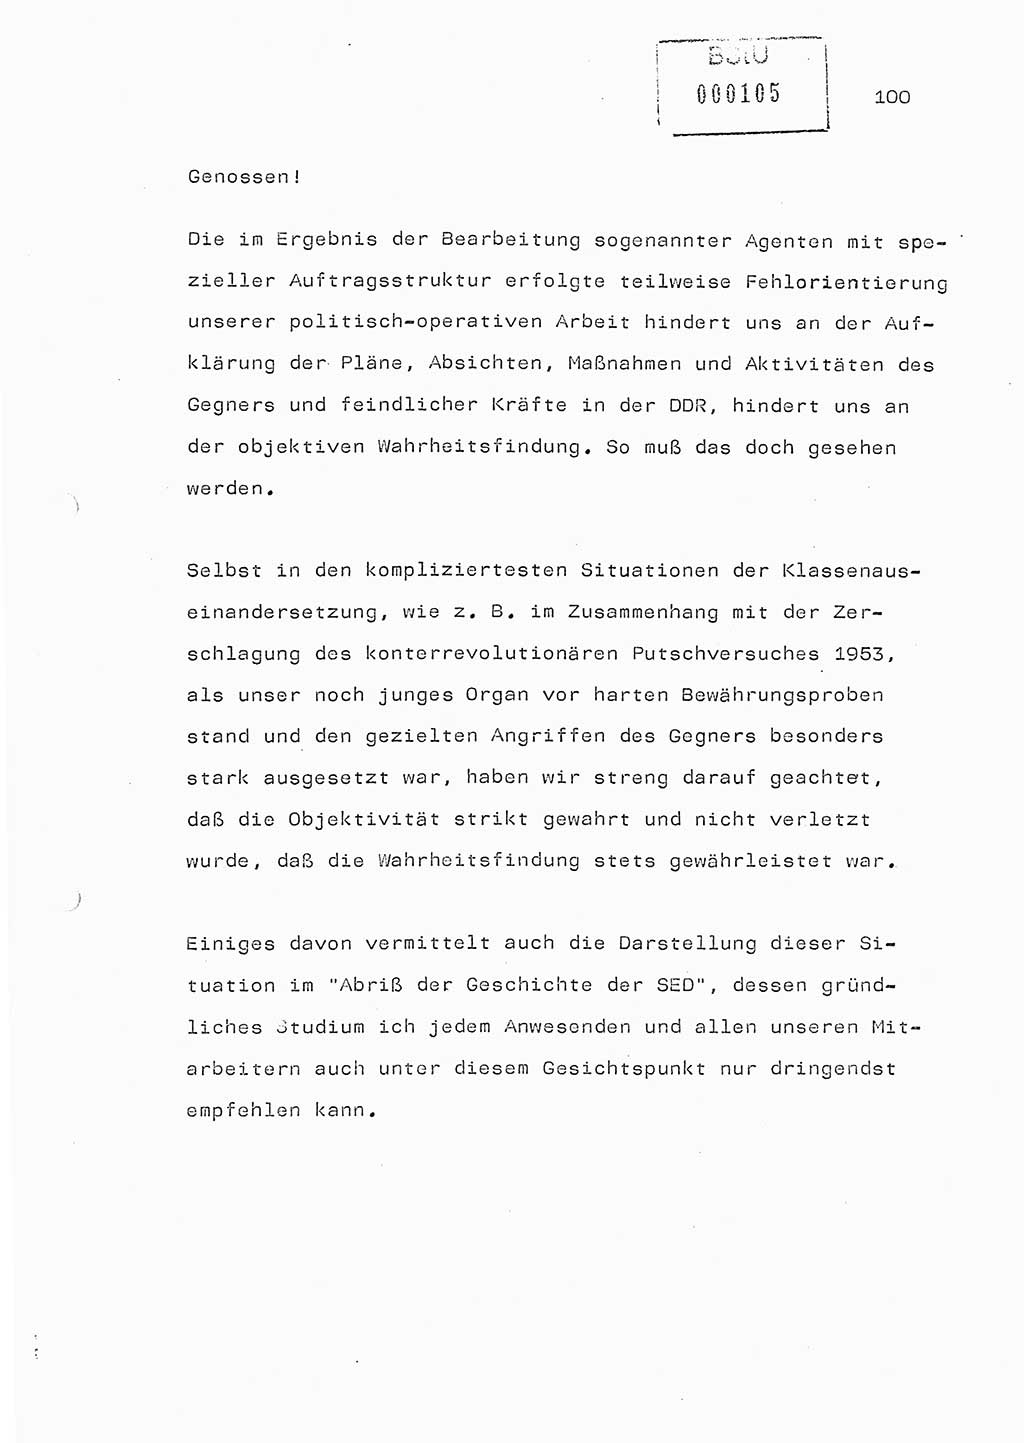 Referat (Generaloberst Erich Mielke) auf der Zentralen Dienstkonferenz am 24.5.1979 [Ministerium für Staatssicherheit (MfS), Deutsche Demokratische Republik (DDR), Der Minister], Berlin 1979, Seite 100 (Ref. DK DDR MfS Min. /79 1979, S. 100)